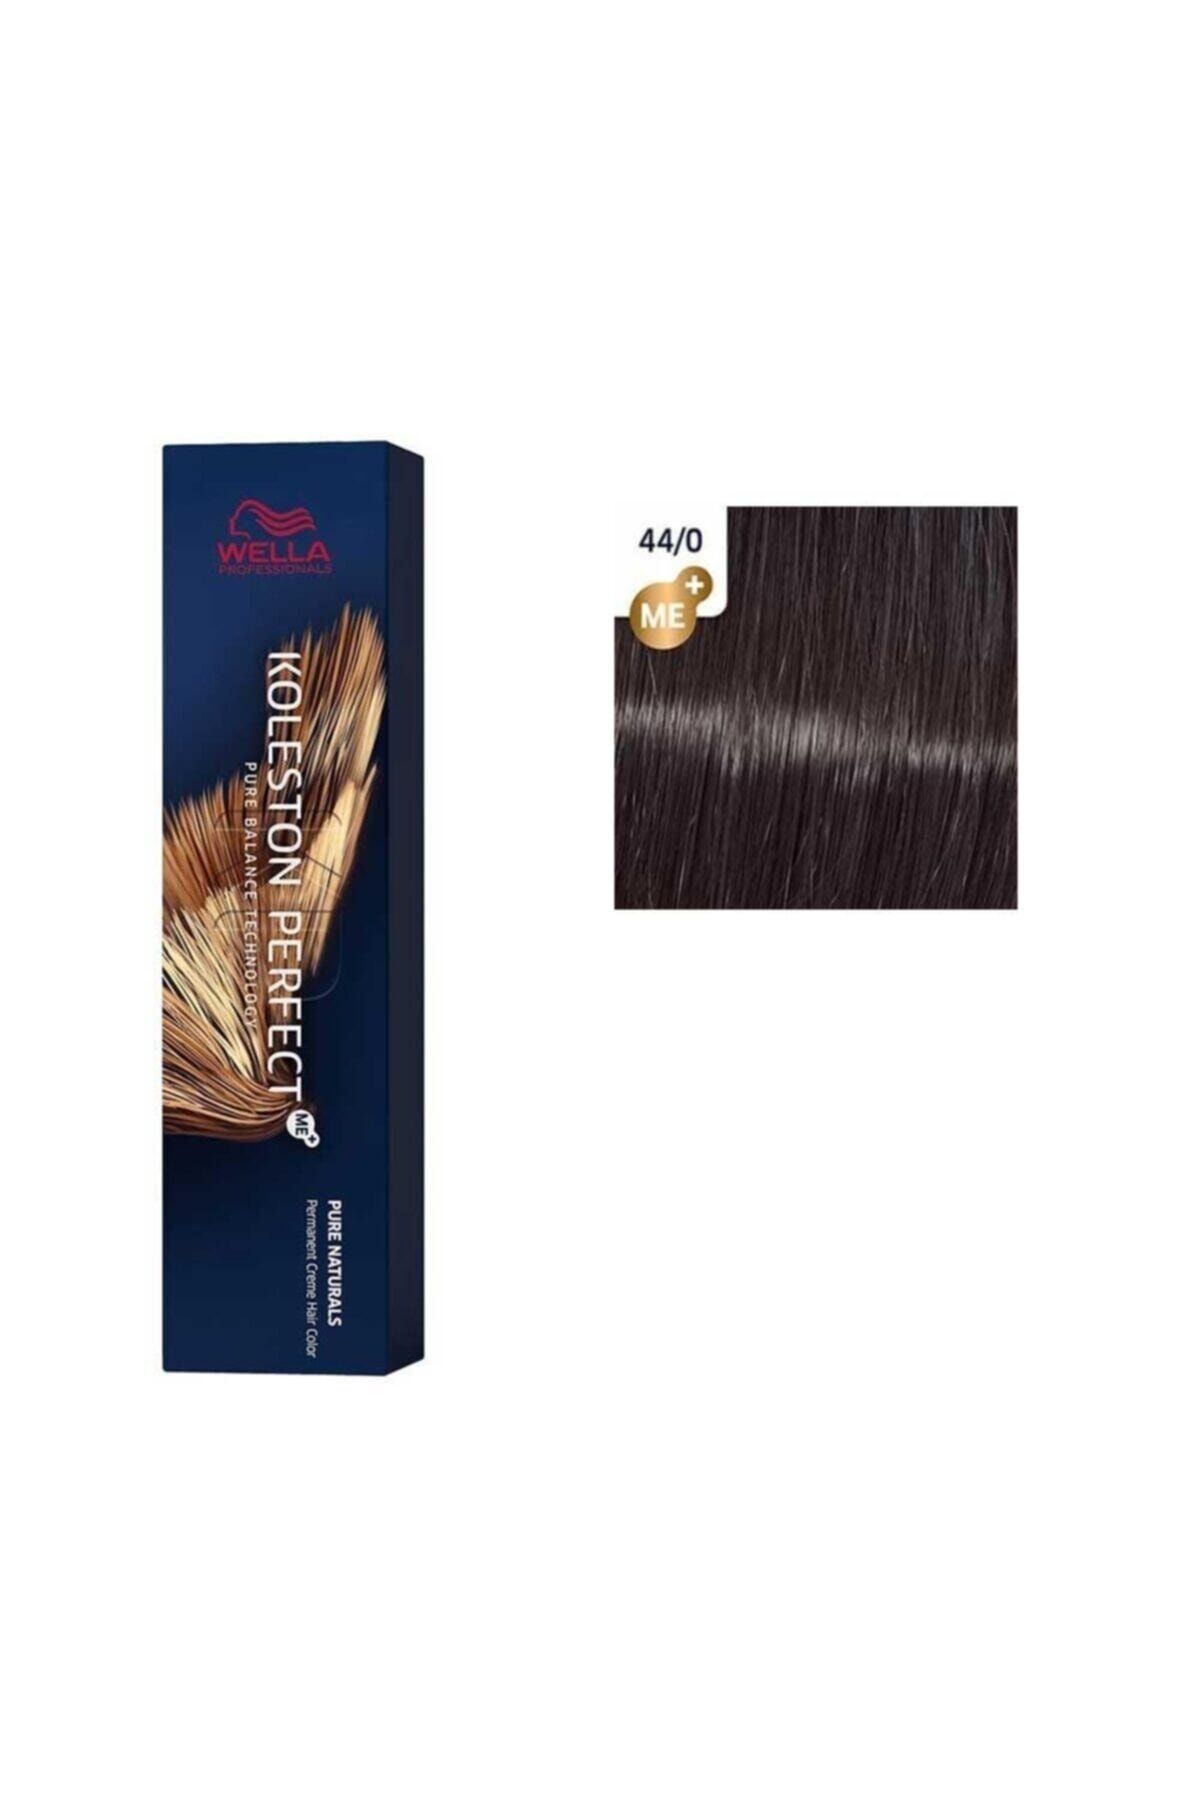 Wella Koleston Perfect Me+süper 44/0 Yoğun Kahverengi Doğal Kalıcı Saç Boyası 60**ml.,.